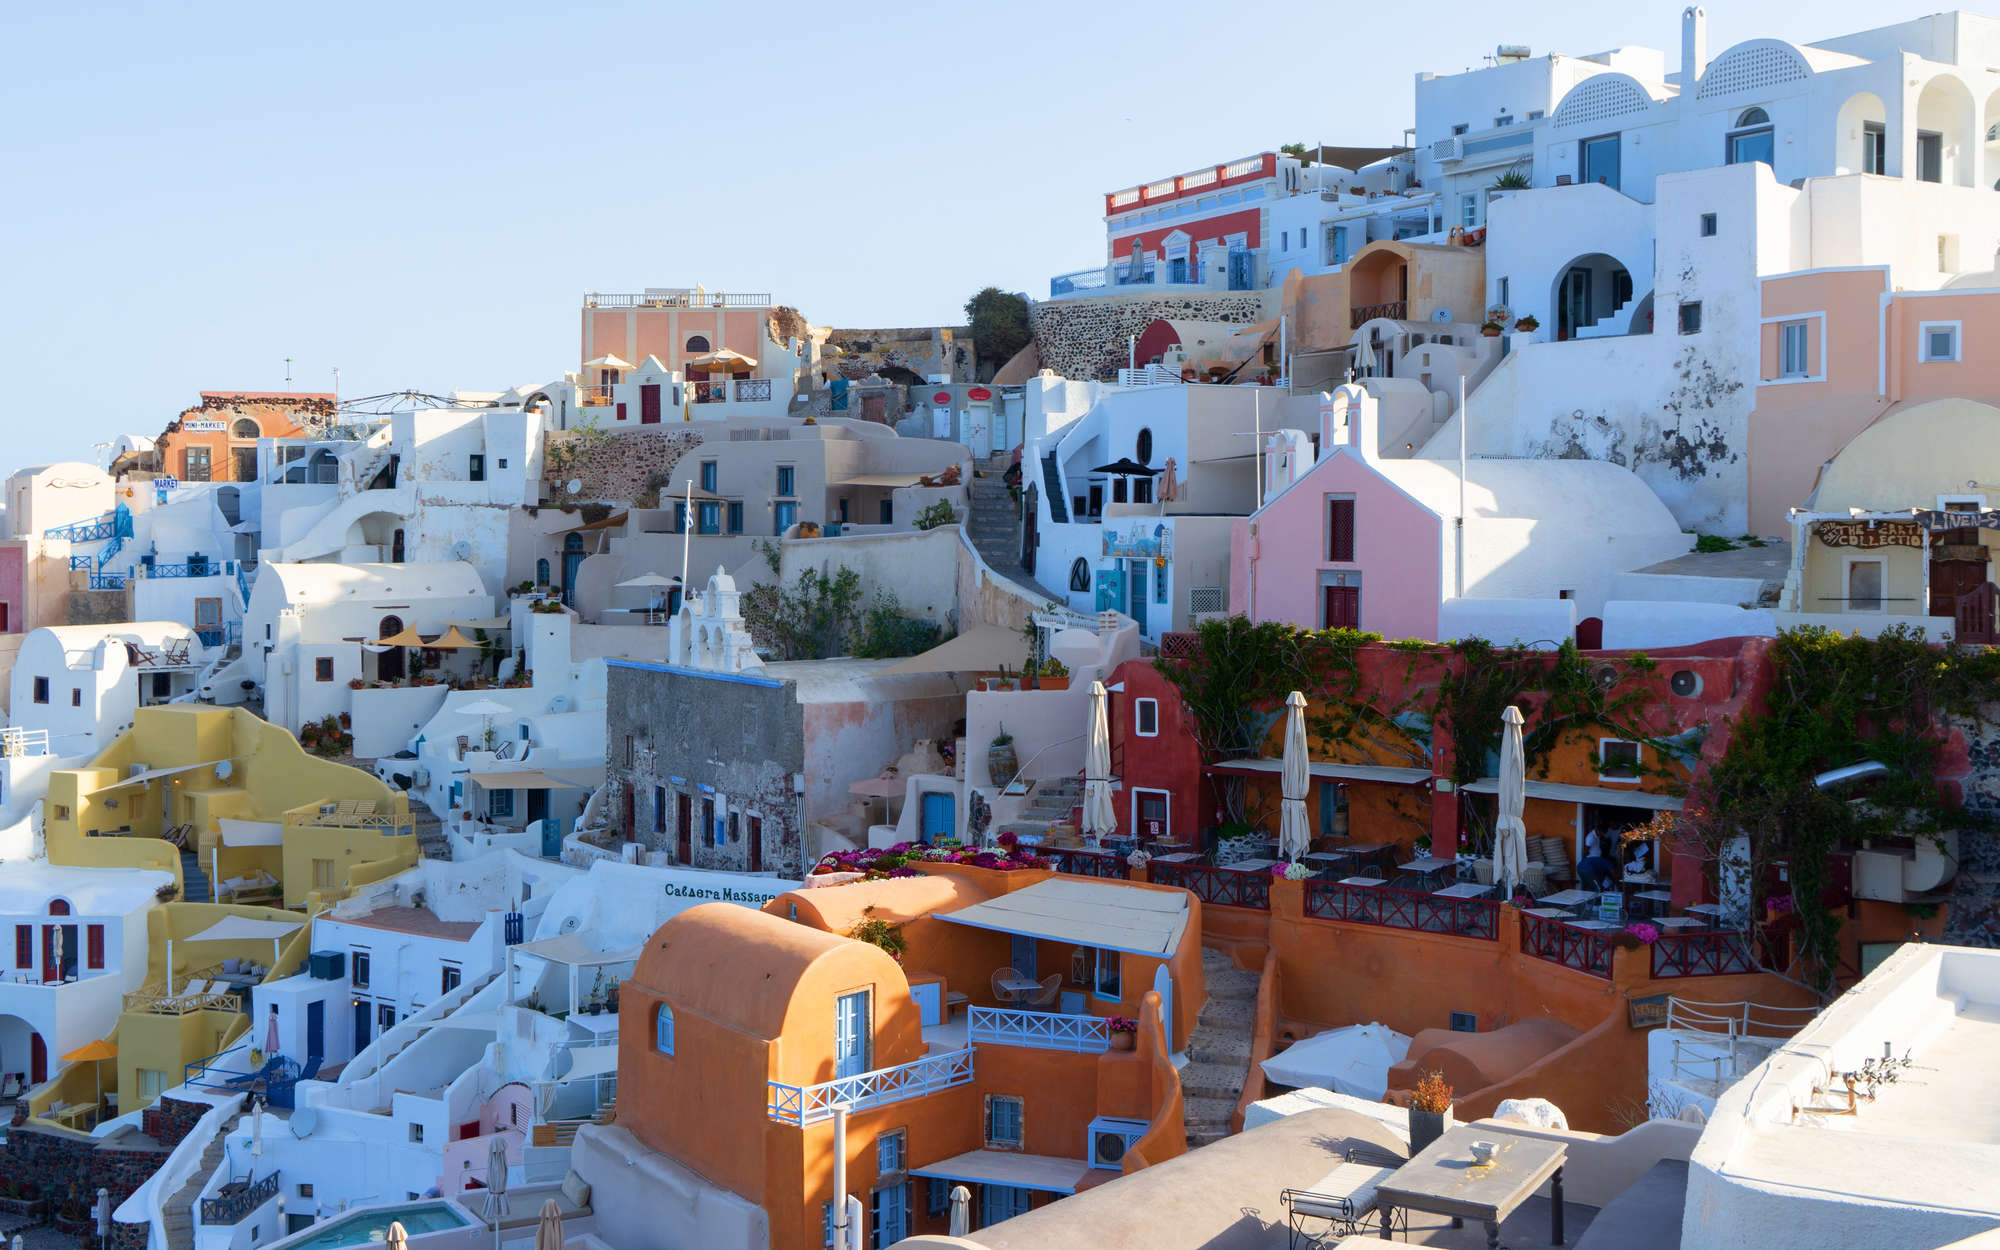             Digital behang Huizen van Santorini - structuur niet-geweven
        